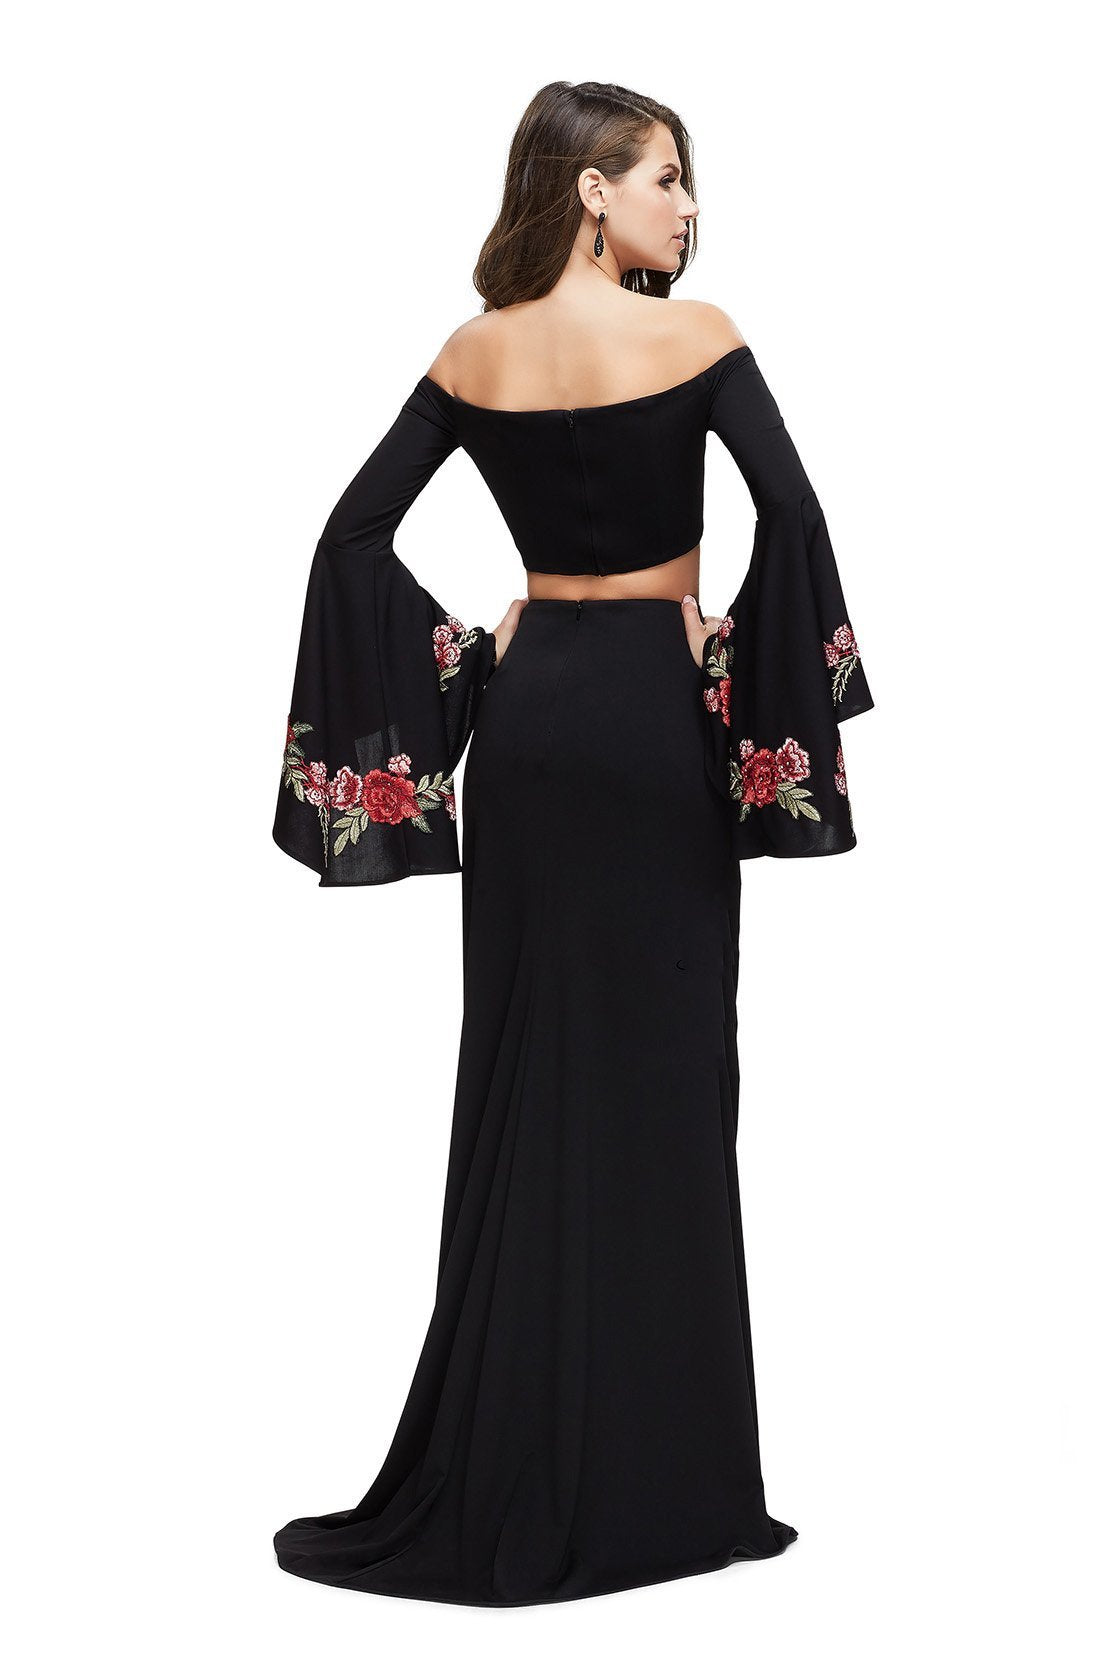 La Femme - Long Bell Sleeve Two-Piece Jersey Sheath Dress 25741SC In Black